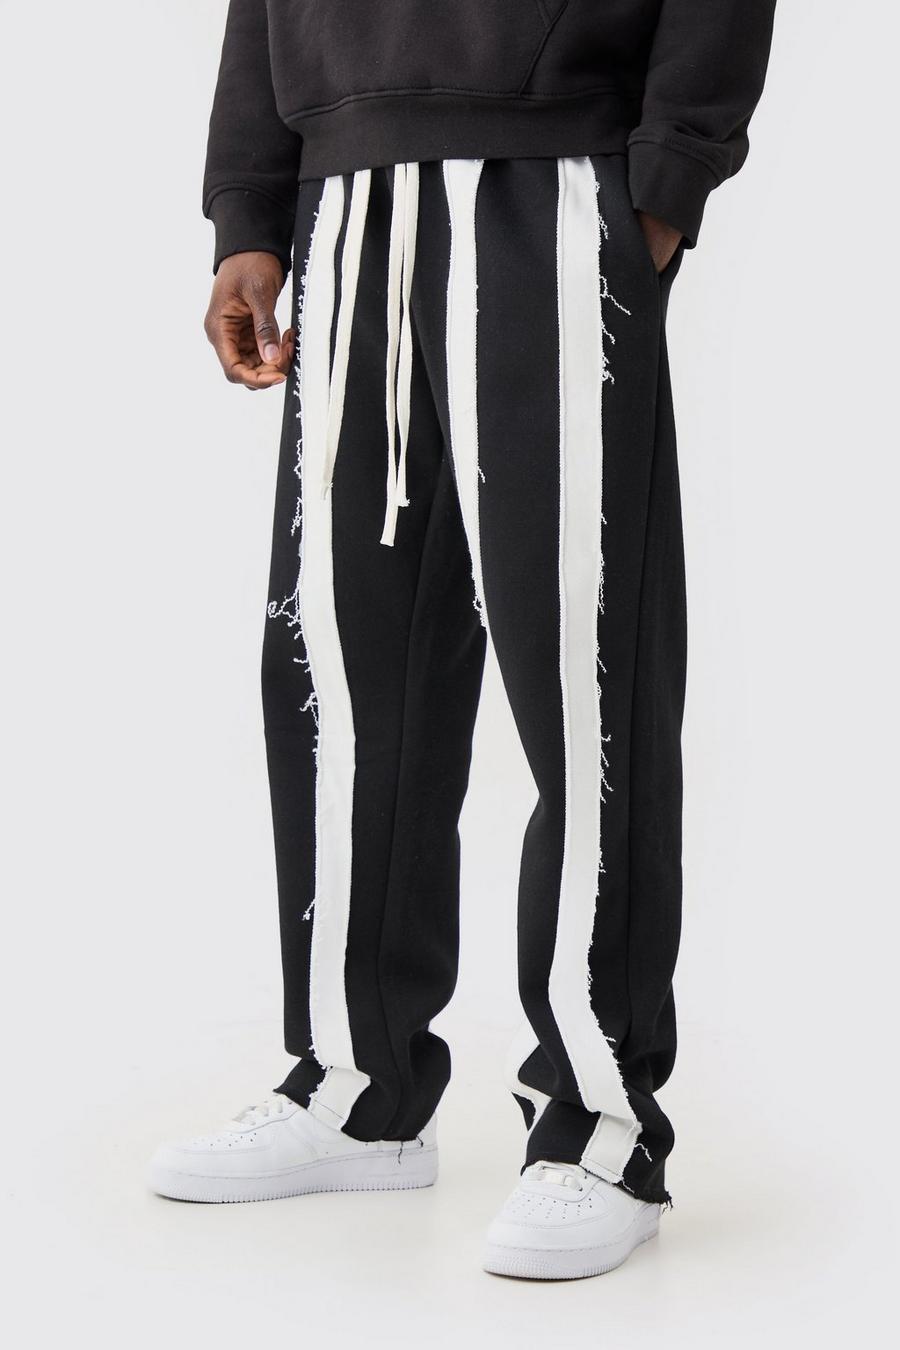 Pantalón deportivo holgado de rayas con costuras y filos sin acabar, Black